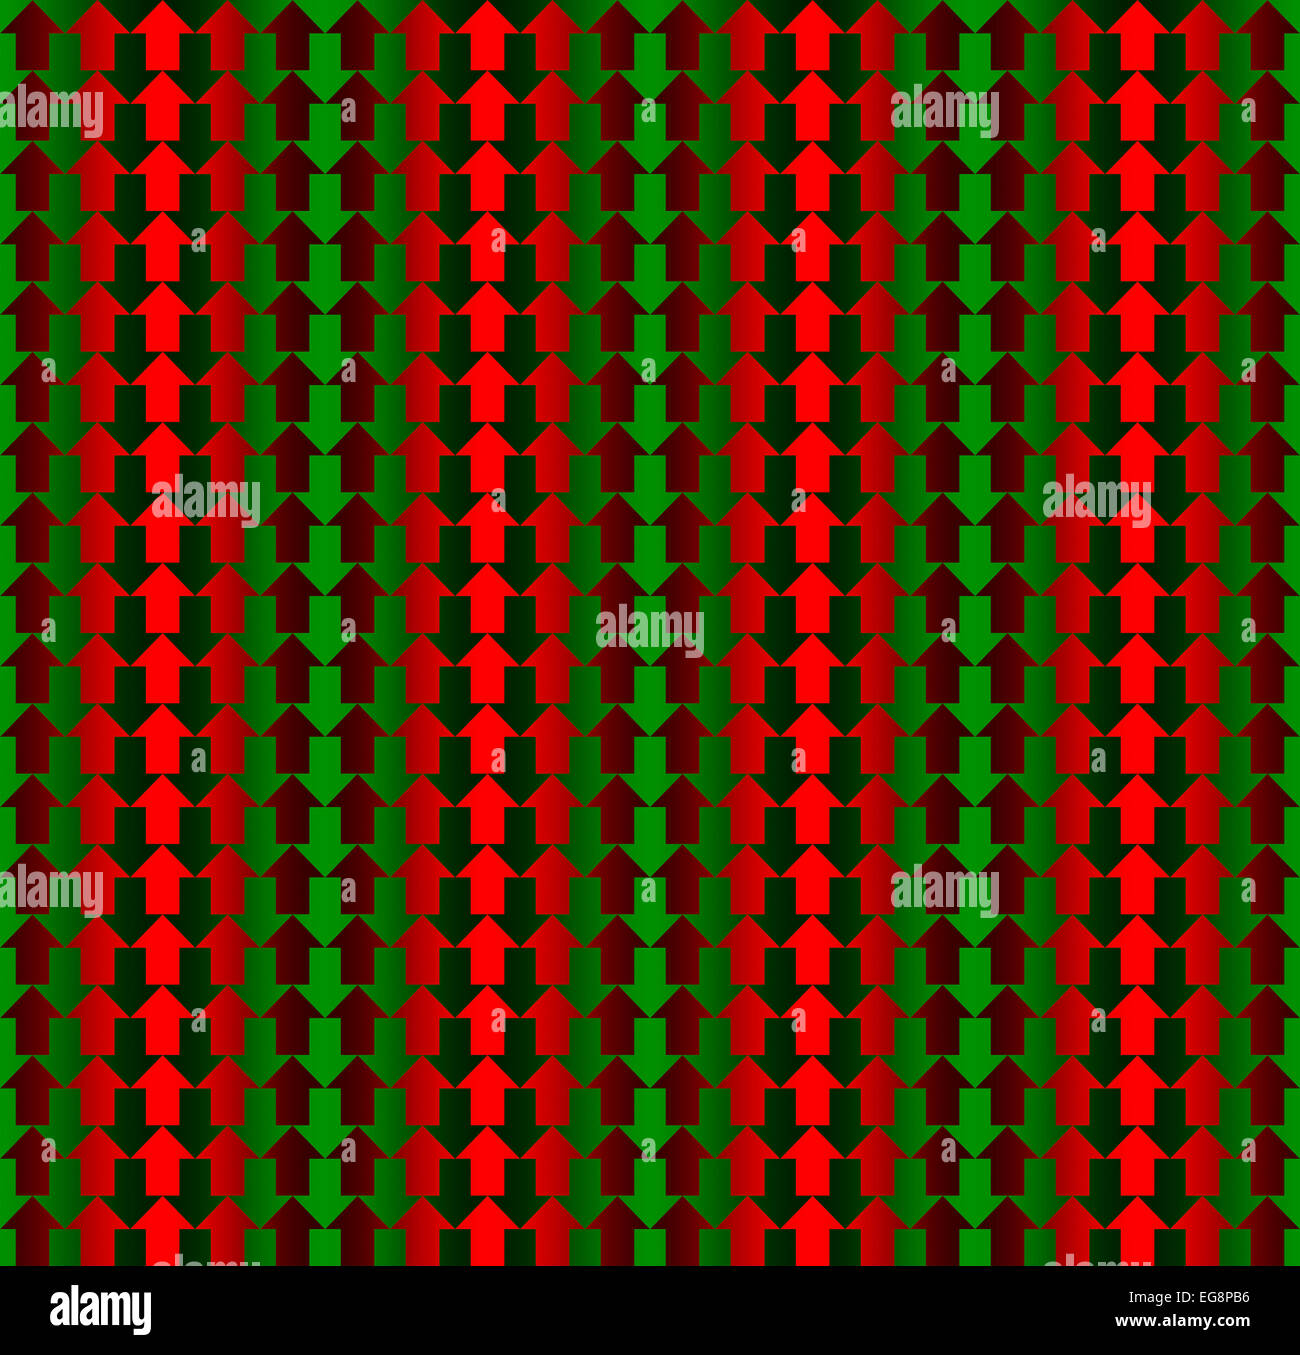 Rote und grüne Pfeile entgegengesetzte Richtungen, mit einem Gefälle, so dass die Illusion von drei Dimensionen, nahtlose Muster Stockfoto